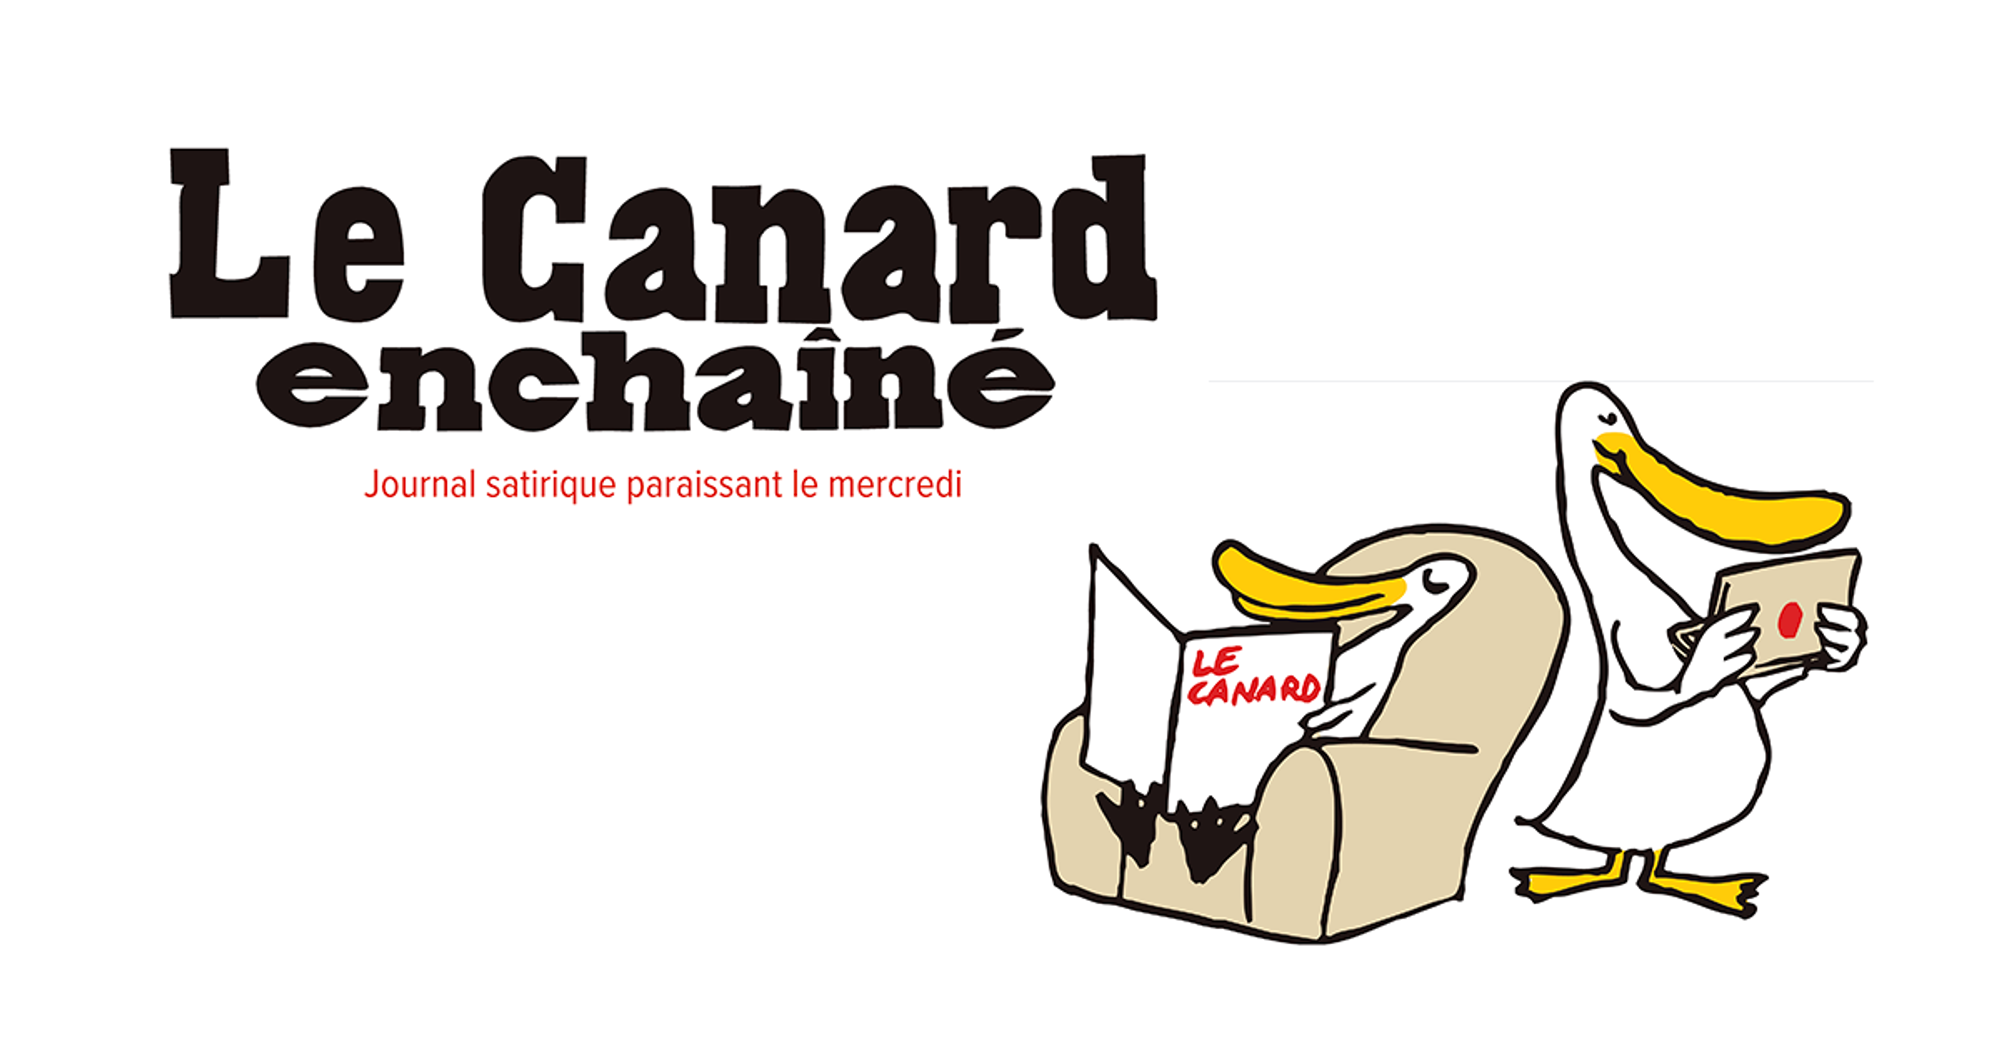 Le Canard enchainé : journal satirique paraissant le mercredi